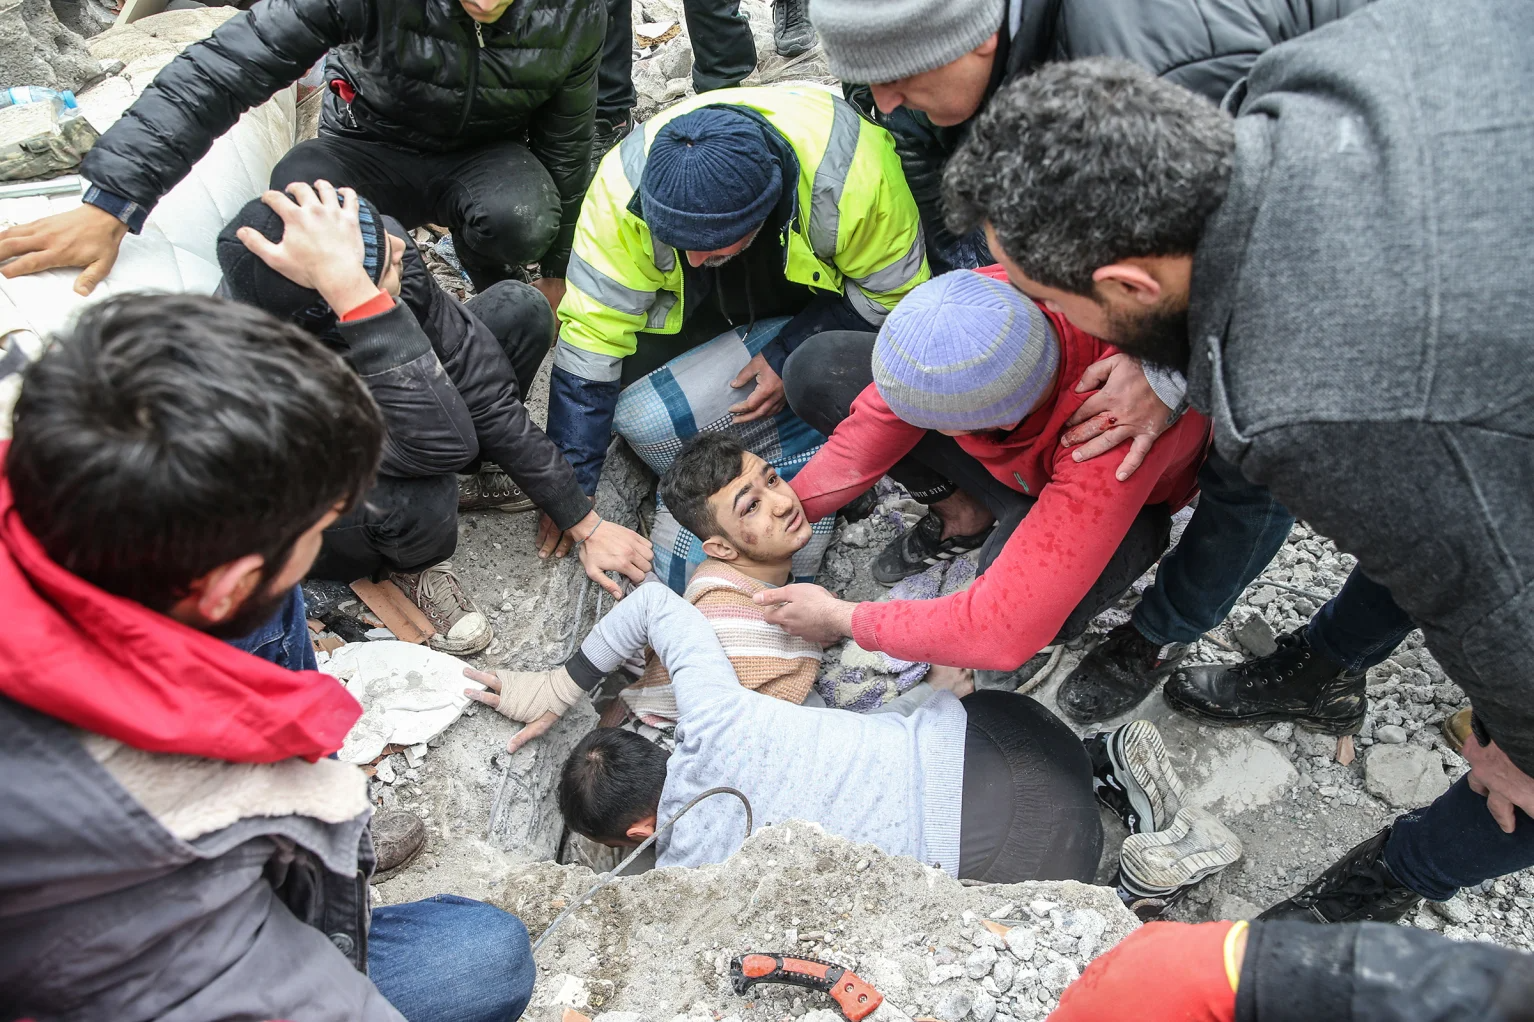 Chùm ảnh hiện trường và nỗ lực cứu hộ sau trận động đất ở Thổ Nhĩ Kỳ và Syria - Ảnh 3.